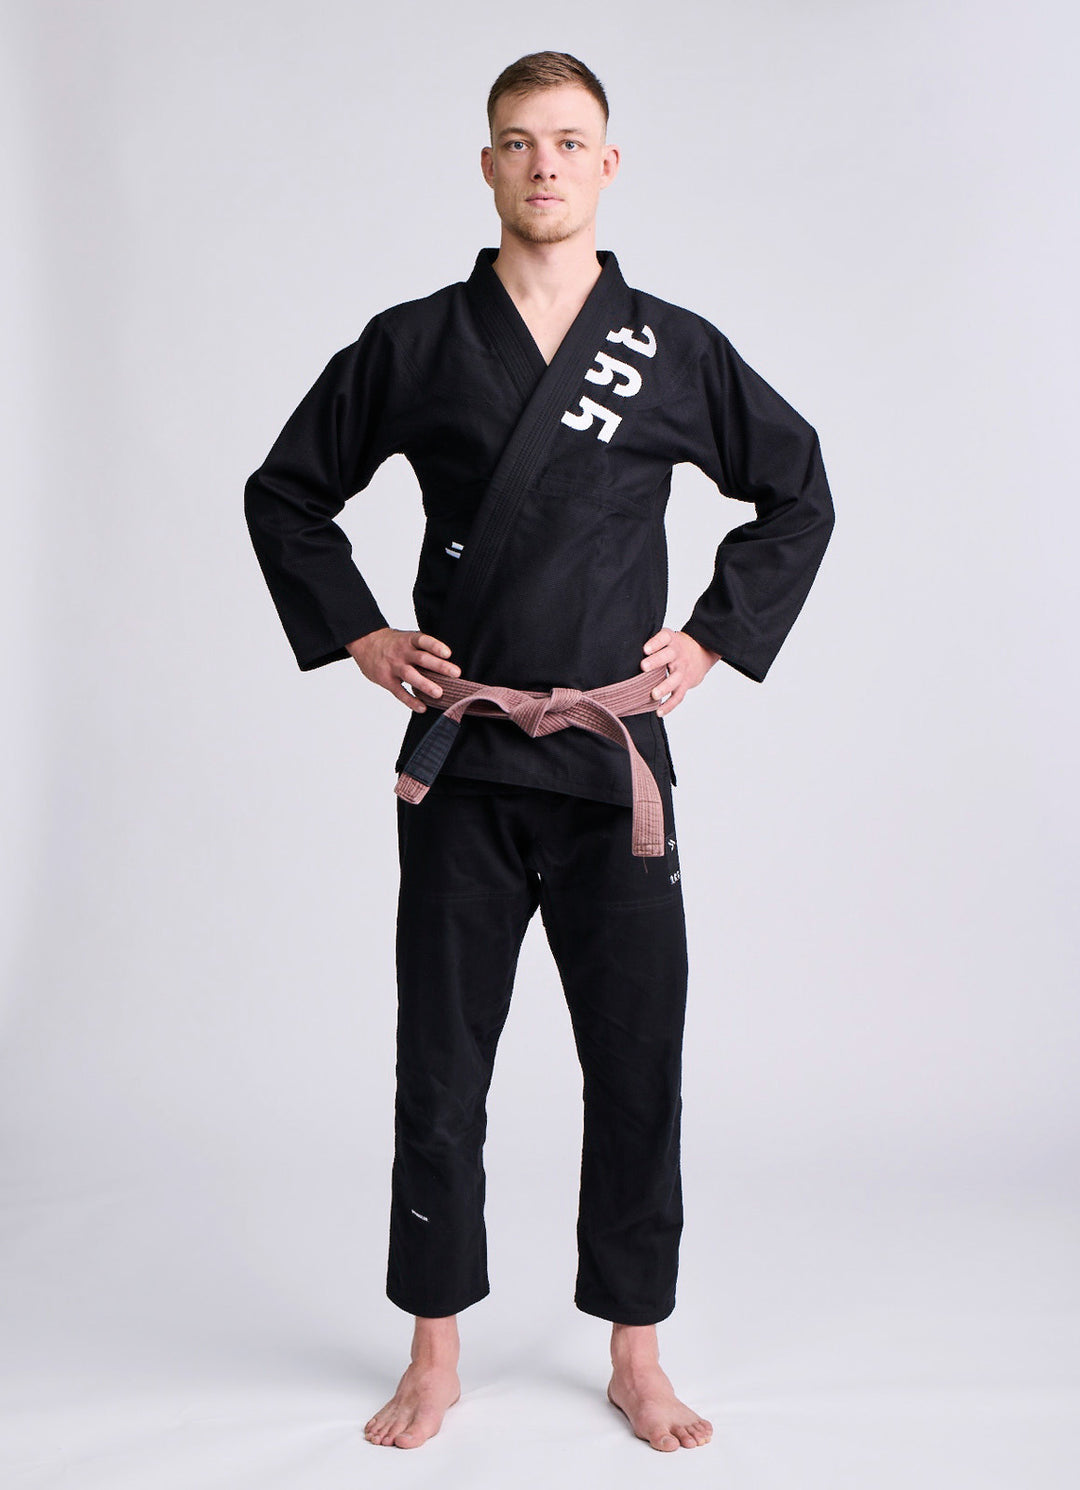 IPPON GEAR 365 BJJ Uniform